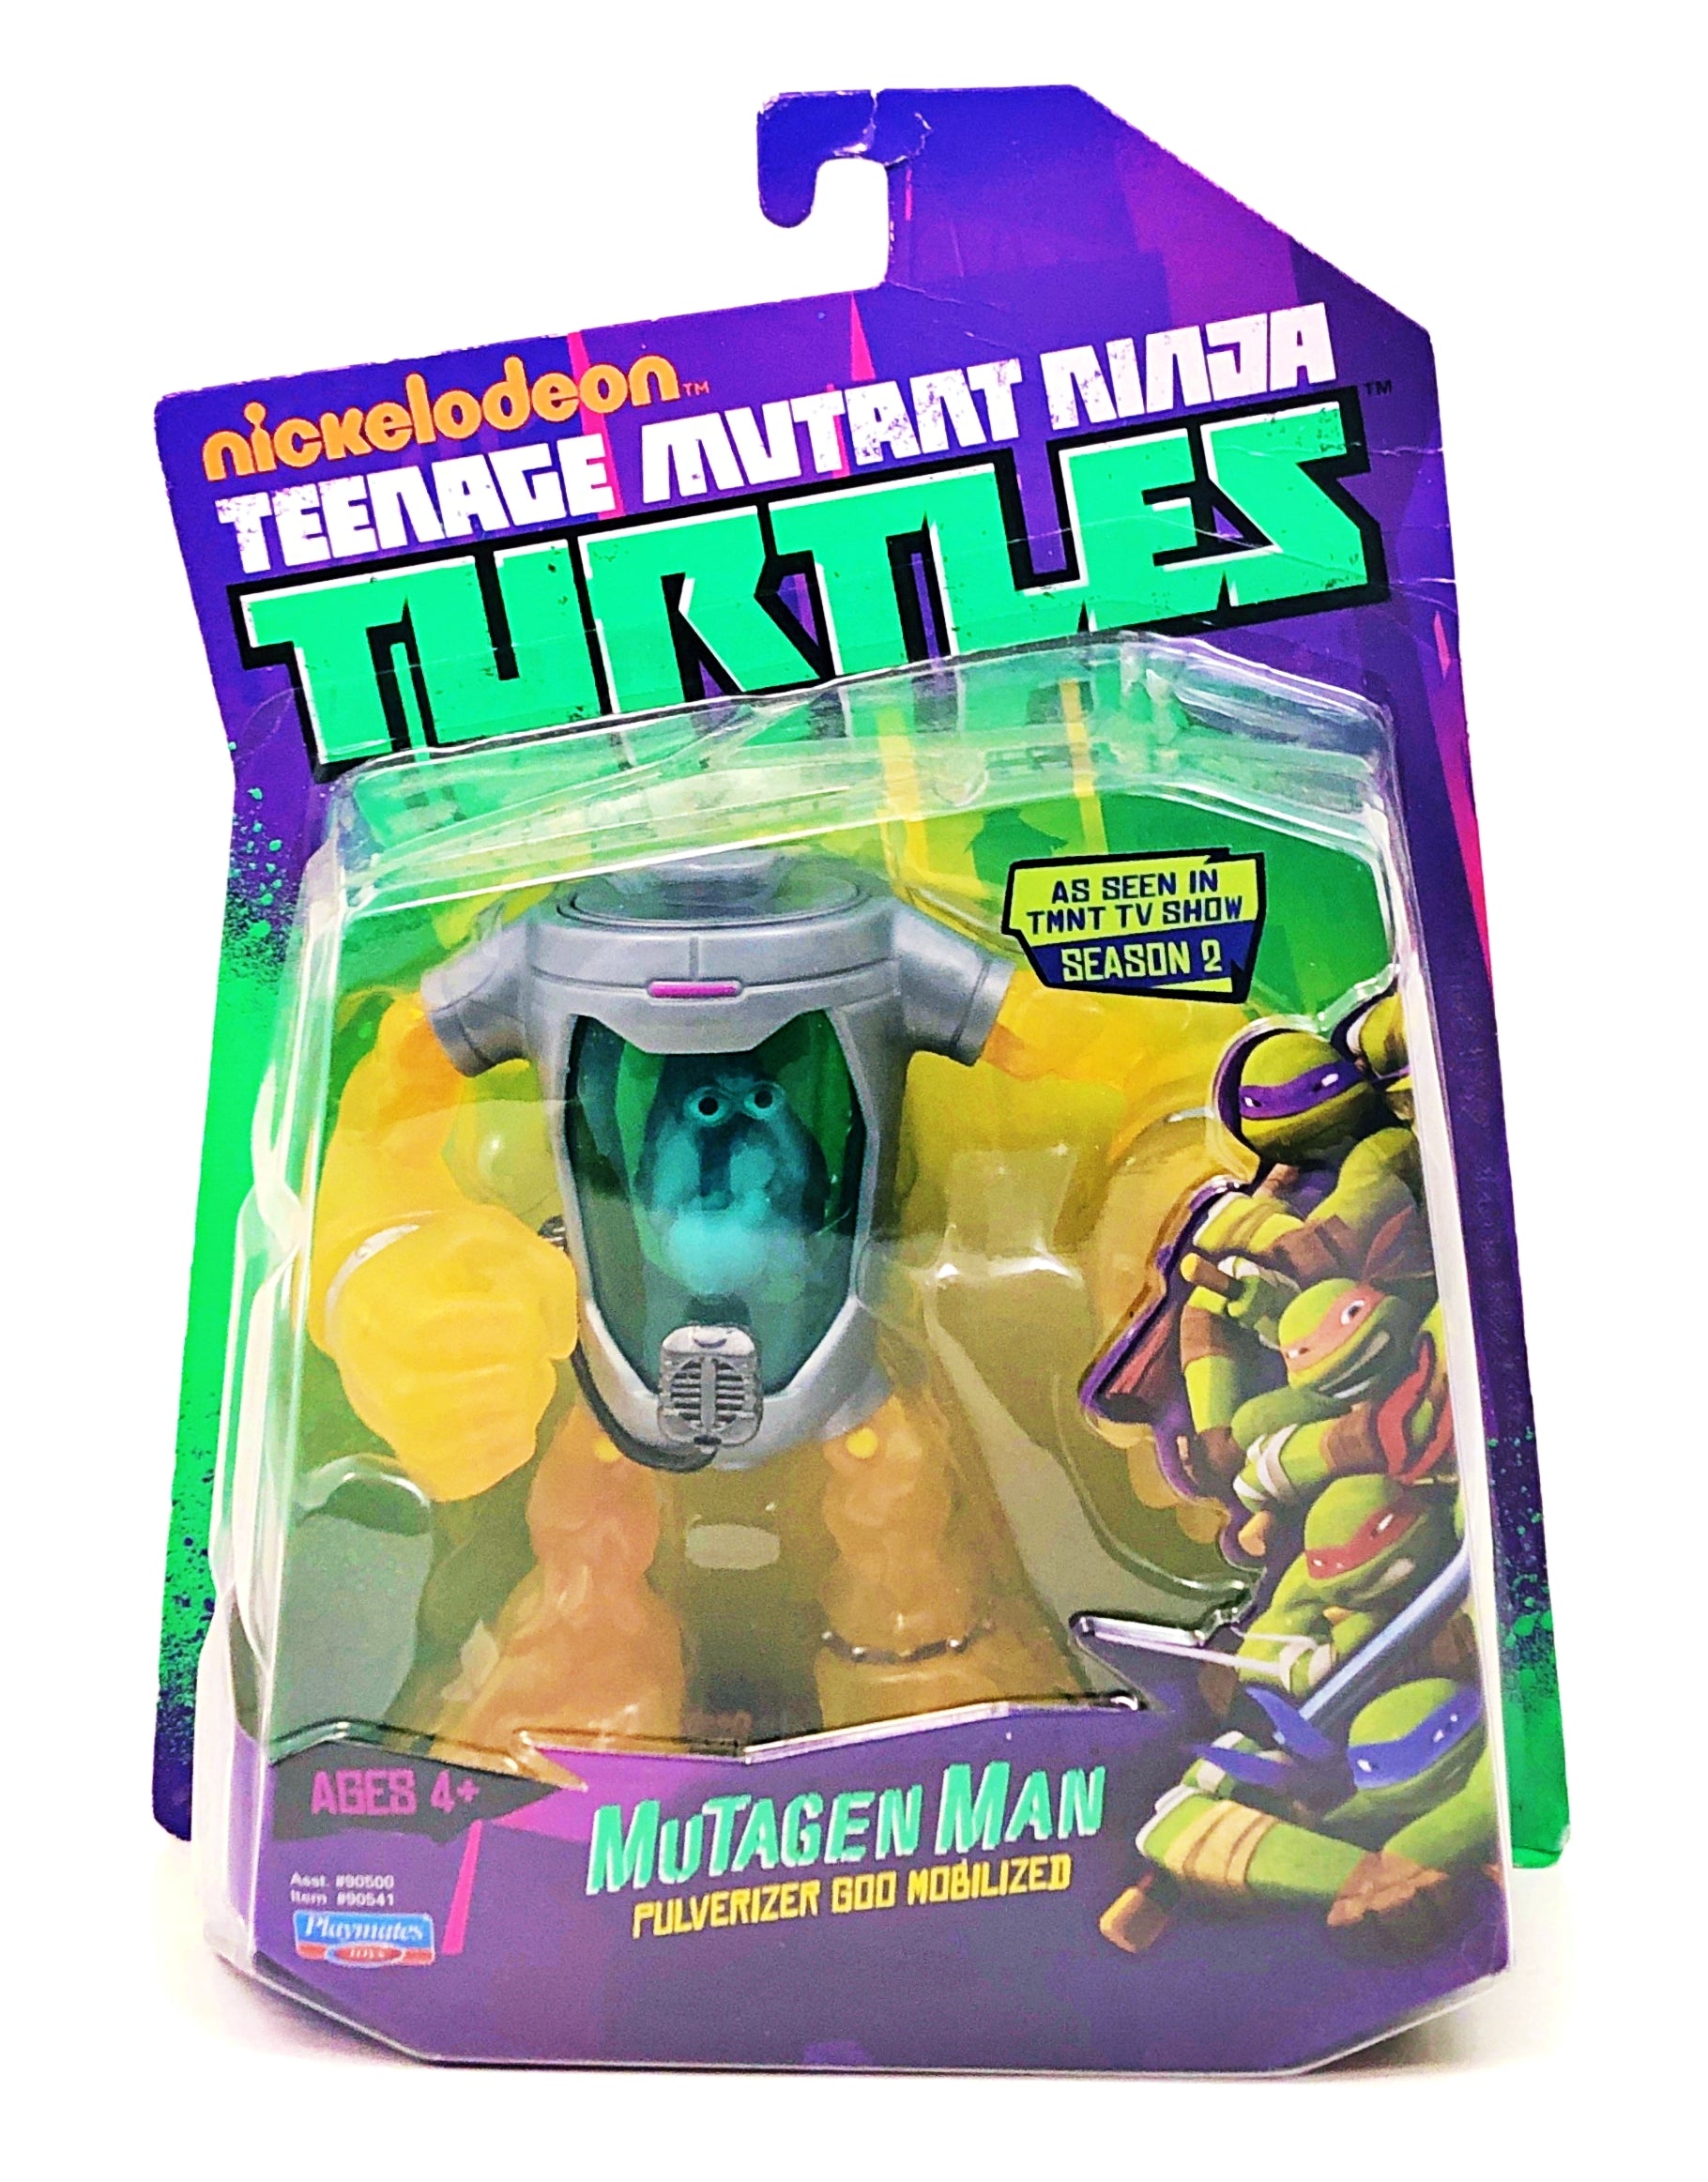 Teenage Mutant Ninja Turtles: Mutagen Man